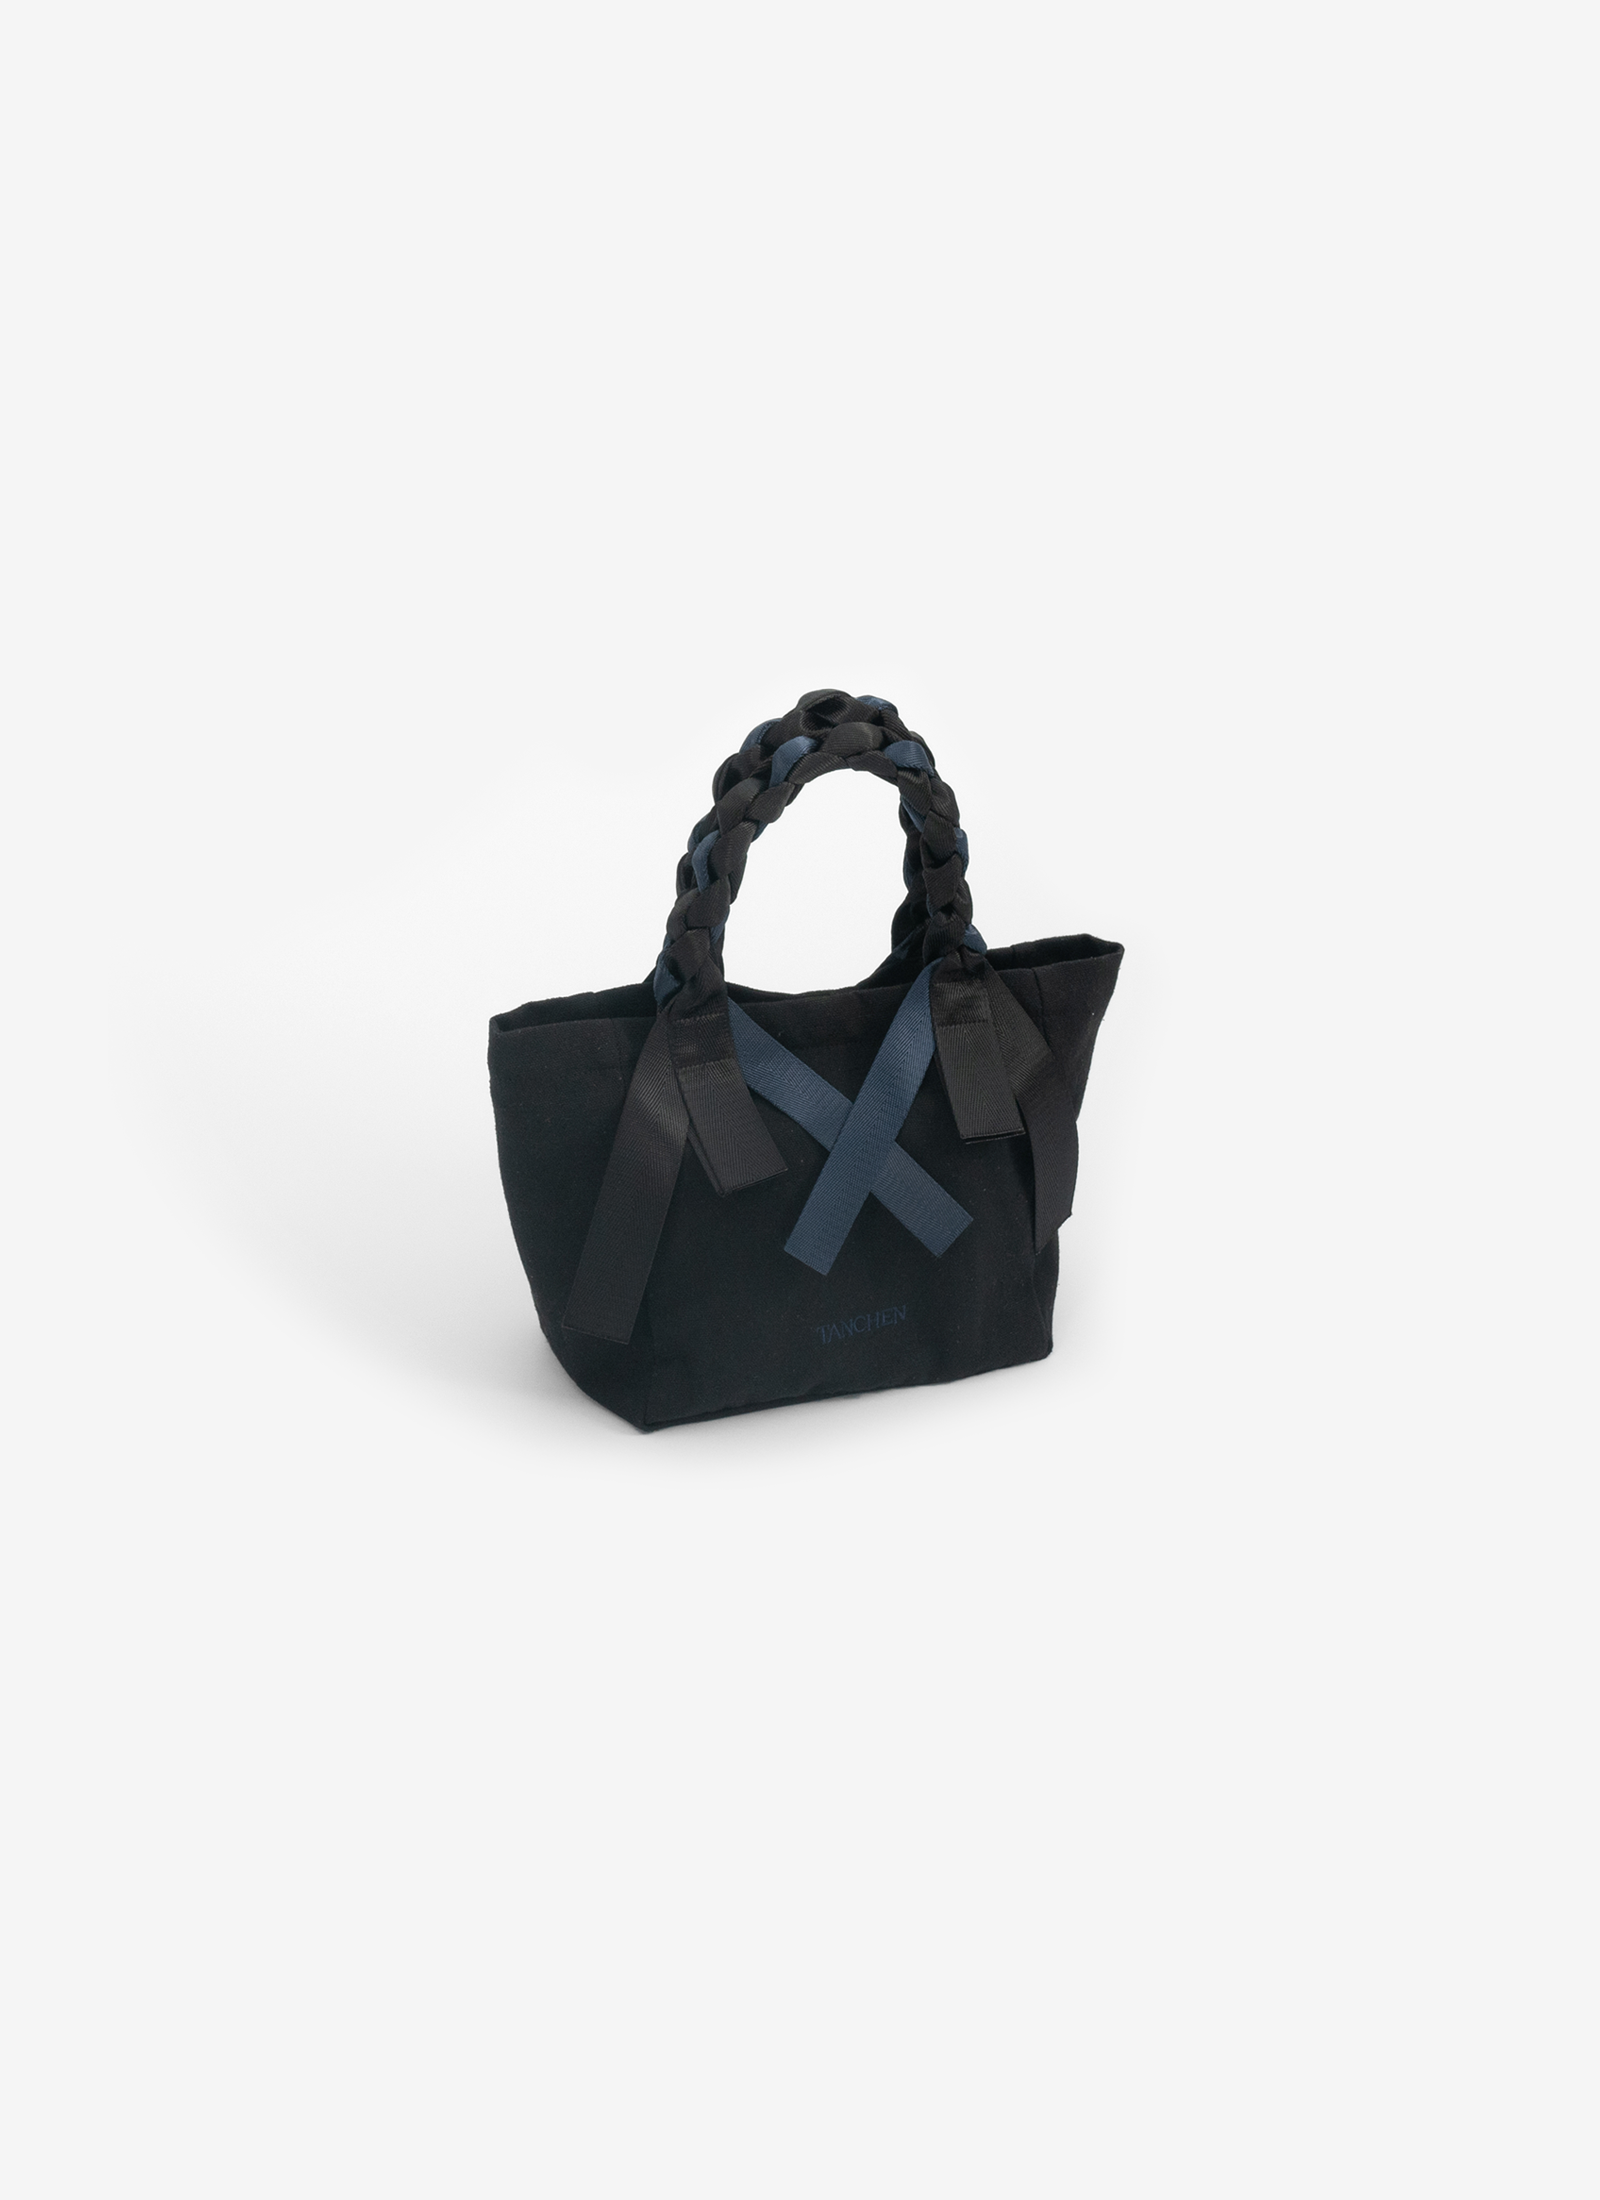 Mini Picnic Bag in Seltzer (Black/Navy)